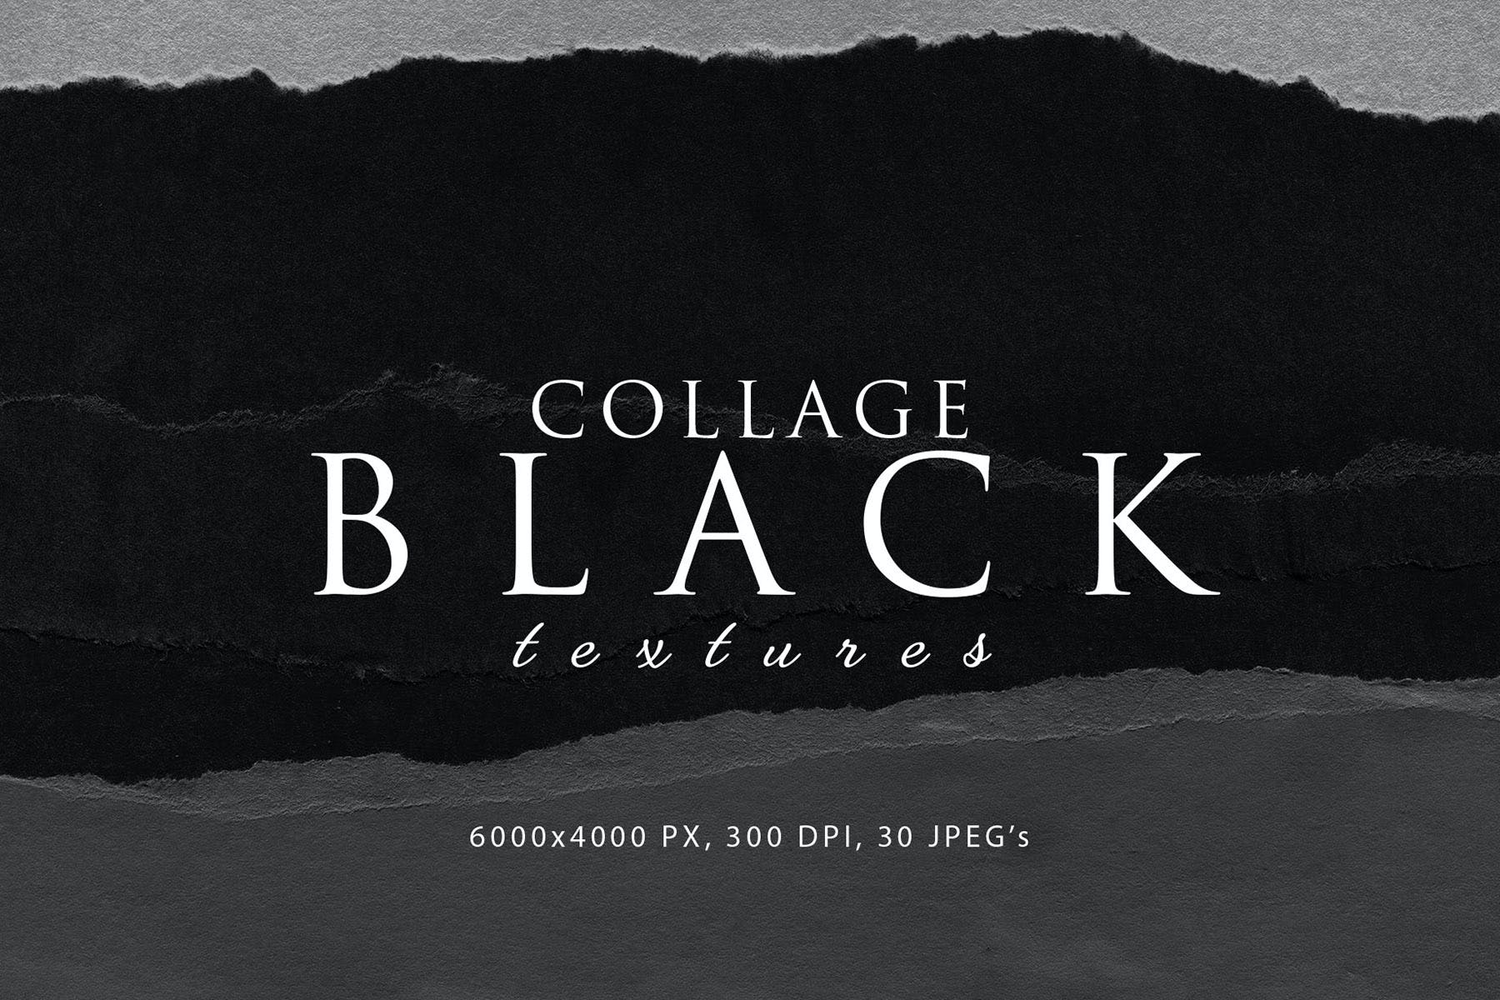 3043 30款黑色背景拼贴撕纸纹理高清背景素材图 Black Paper Collage Textures